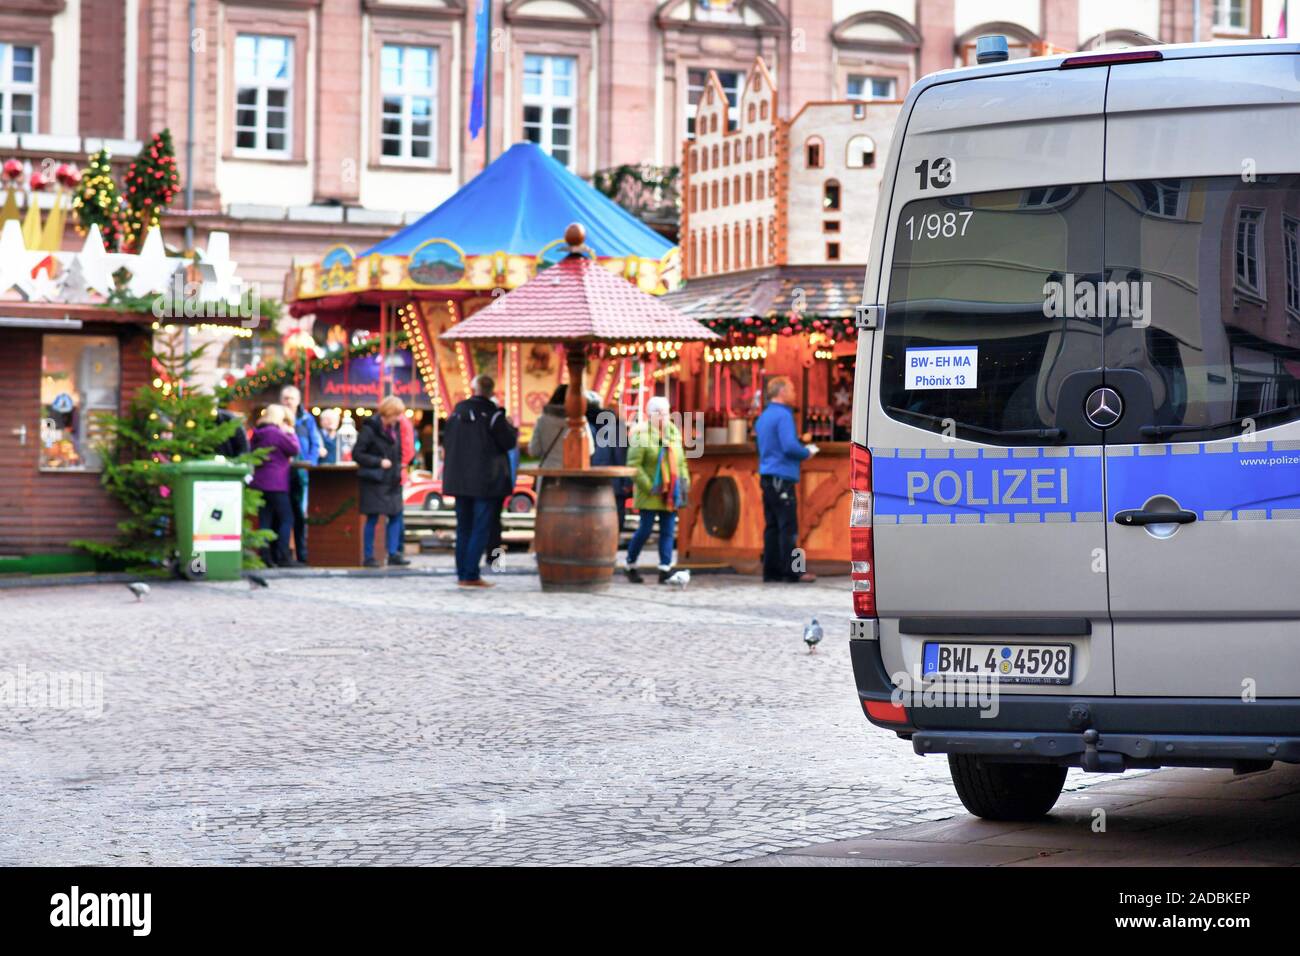 Deutsche Polizei Auto patroling im Stadtzentrum, während der traditionelle Weihnachtsmarkt mit verschwommenen Vertrieb stände und Menschen im Hintergrund Stockfoto